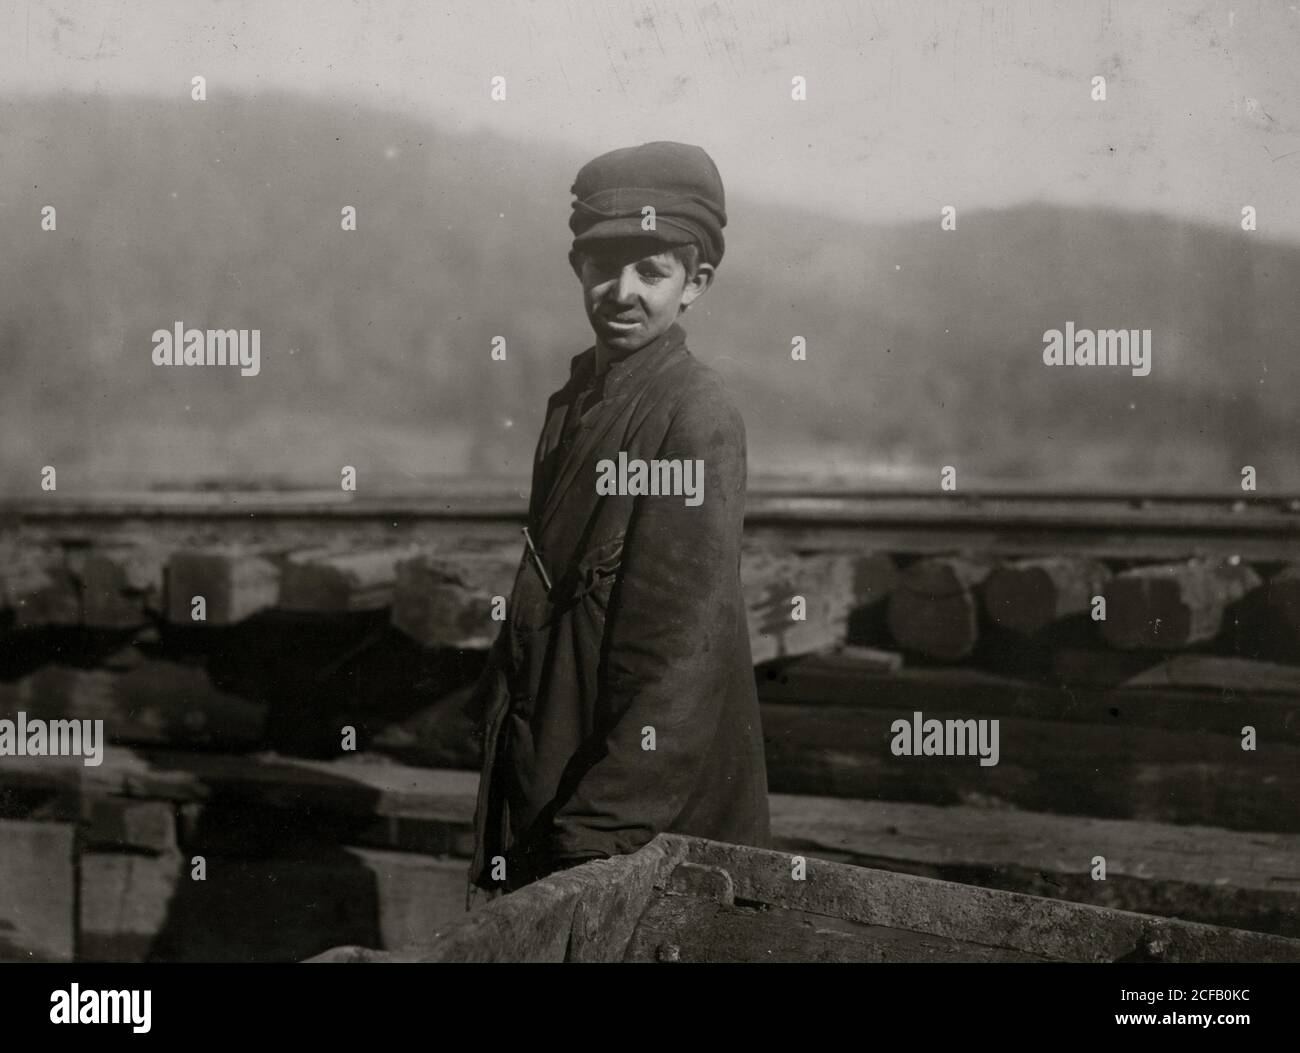 Harley Bruce. Un jeune garçon à l'accouplement d'tipple de mine, de l'Indian Mountain Proctor Coal Co., près de Jellico, Tenn. Banque D'Images